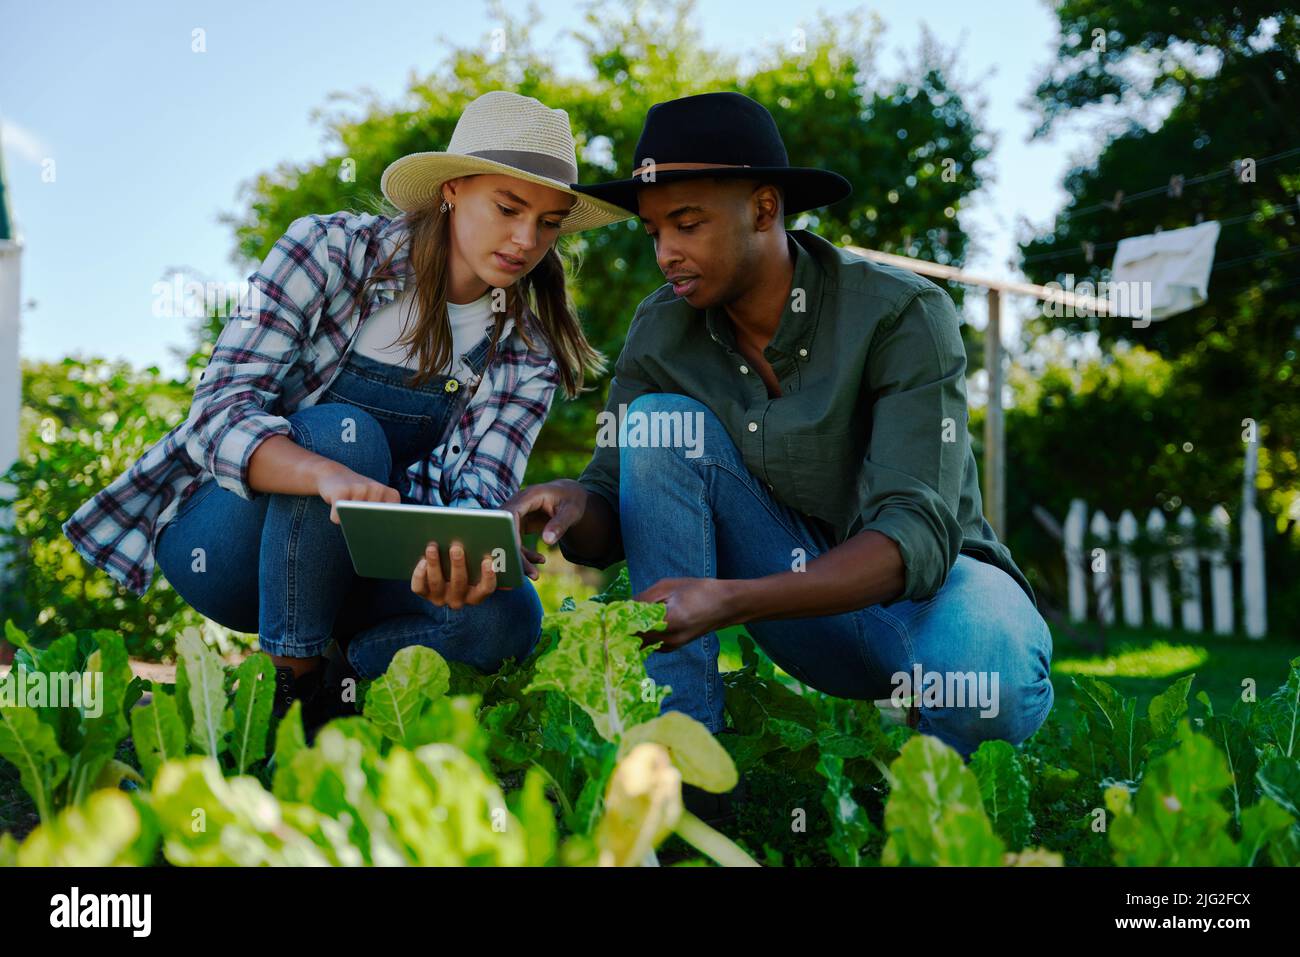 agriculteurs mixtes de race masculine et féminine travaillant dans la zone végétale Banque D'Images